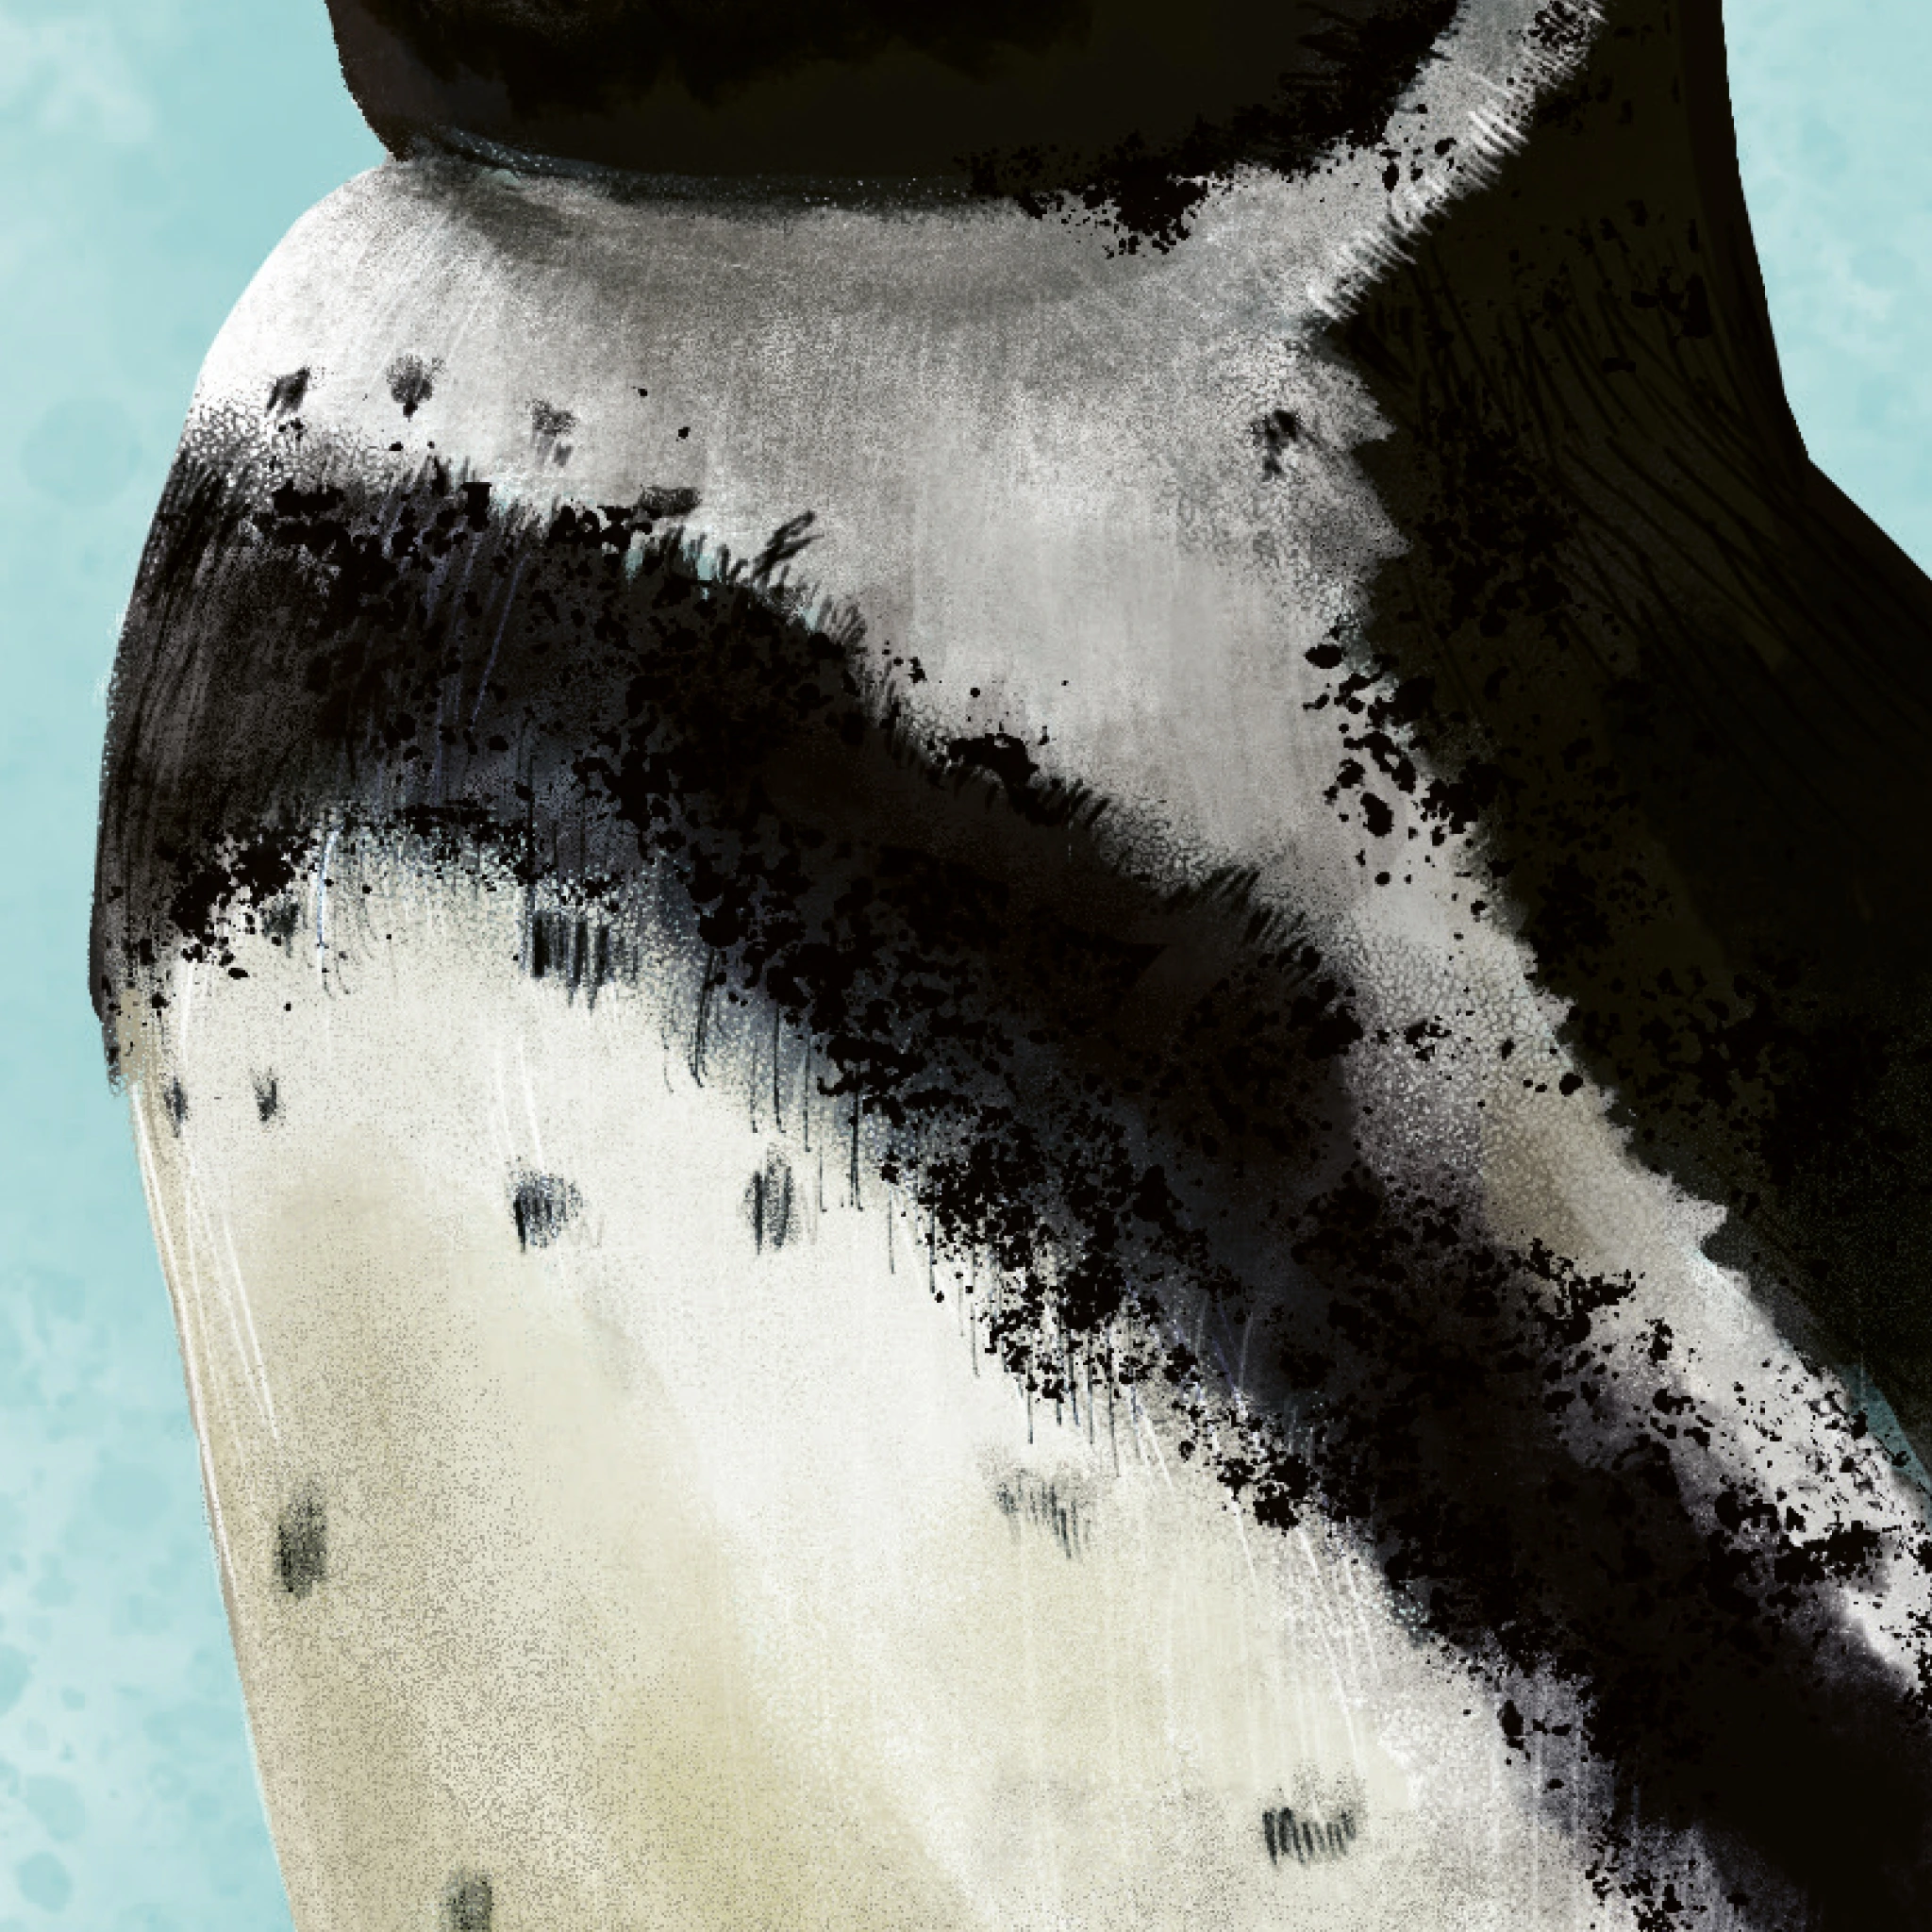 Gros plan sur l'illustration du plumage noir et blanc, du Manchot Humboldt. L'arrière-plan est bleu clair, façon tâches d'aquarelle.